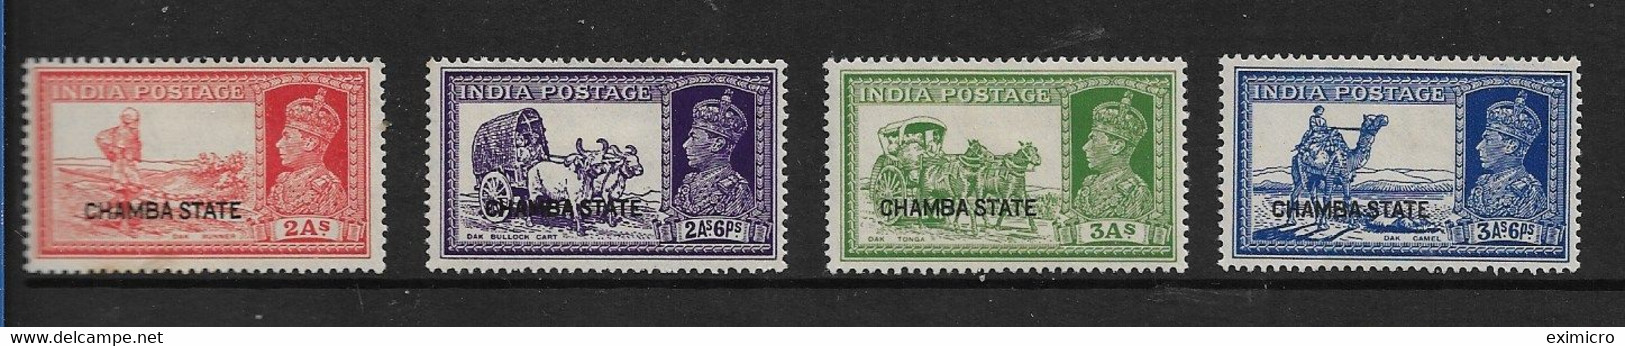 INDIA - CHAMBA 1938 2a, 2a 6p, 3a, 3a 6p SG 86/89 MOUNTED MINT Cat £65 - Chamba